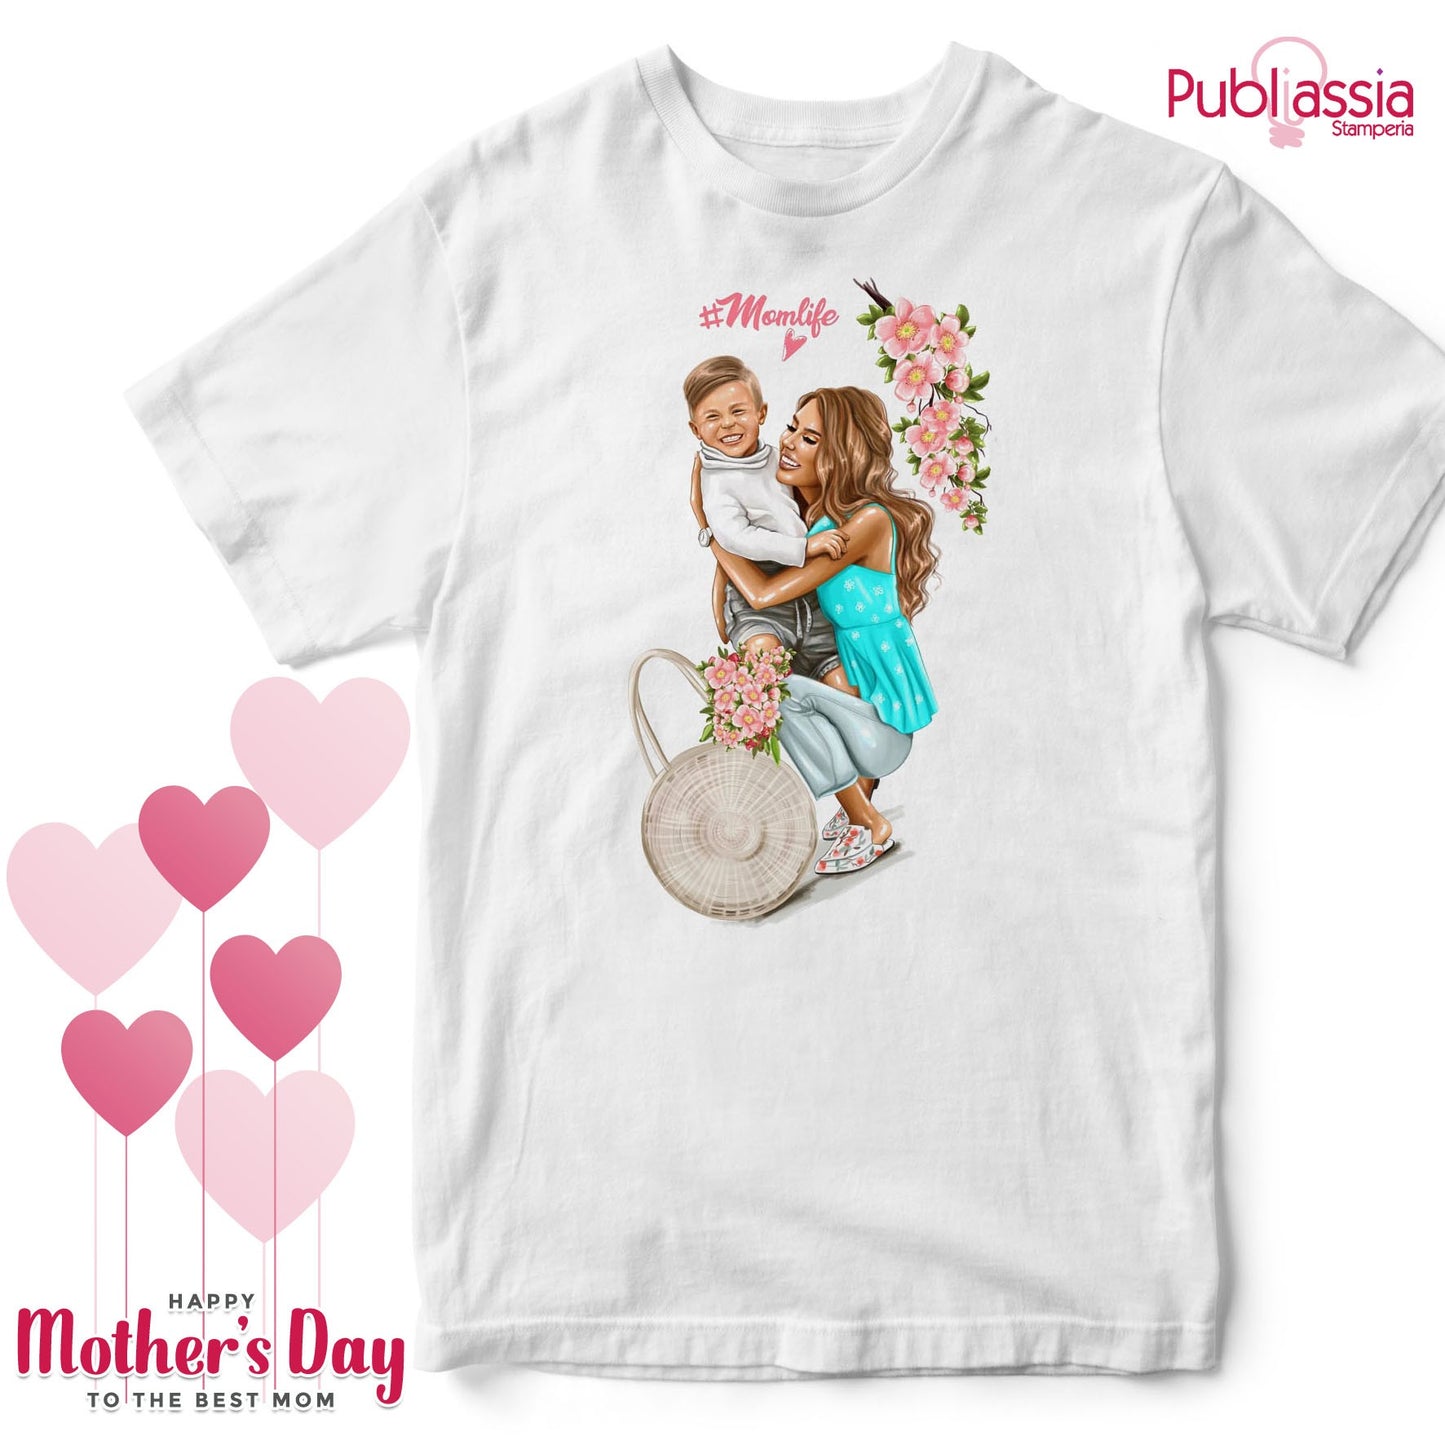 Mom Life 2 - Festa della Mamma t-shirt